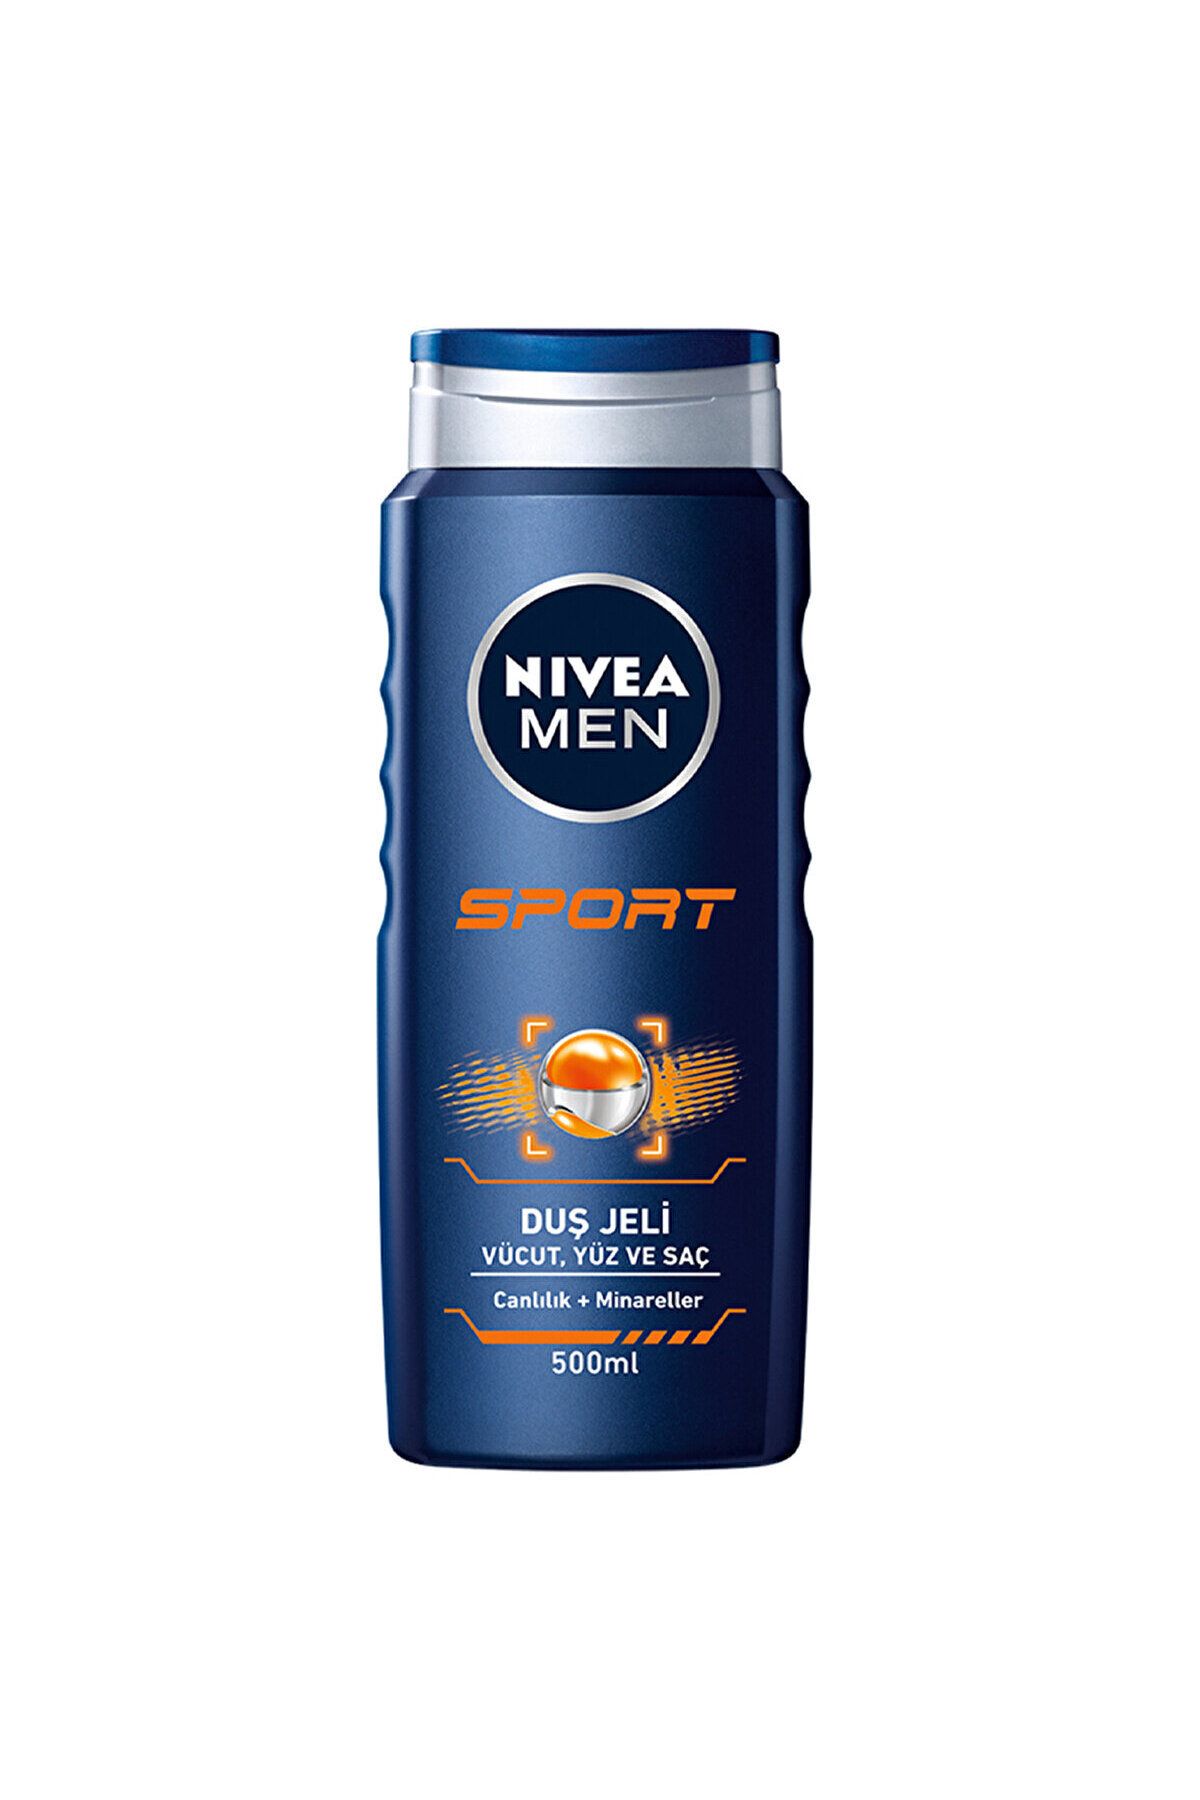 NIVEA Men Sport Men's Shower Gel 500 ml DKÜRN680